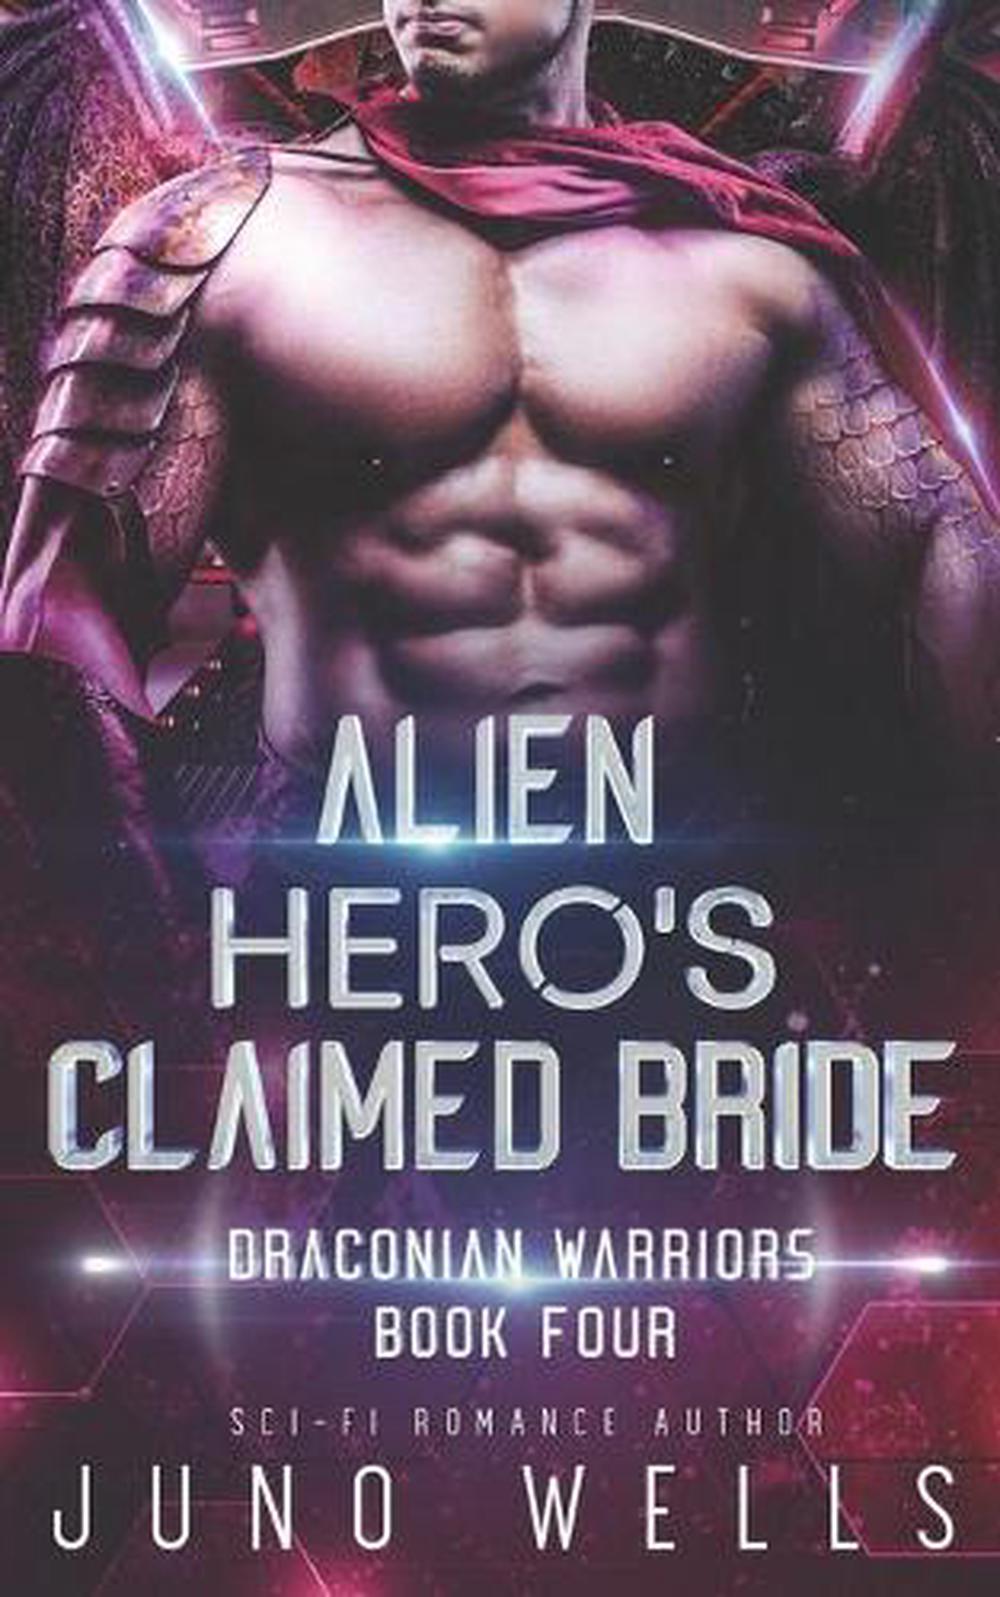 venomous alien warrior science fiction romance penelope fletcher